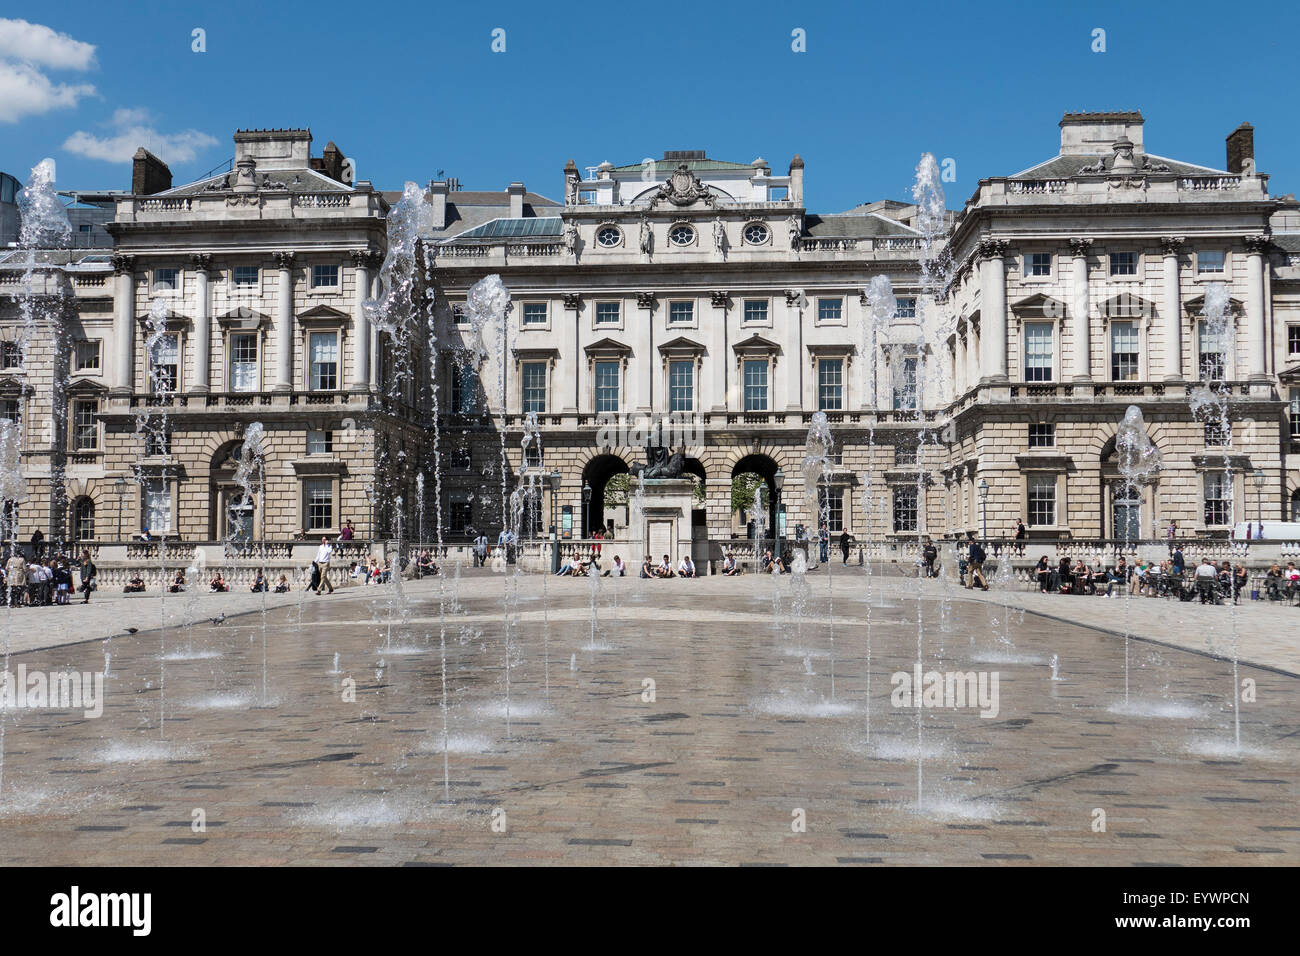 Somerset House, London, England, United Kingdom, Europe Stock Photo